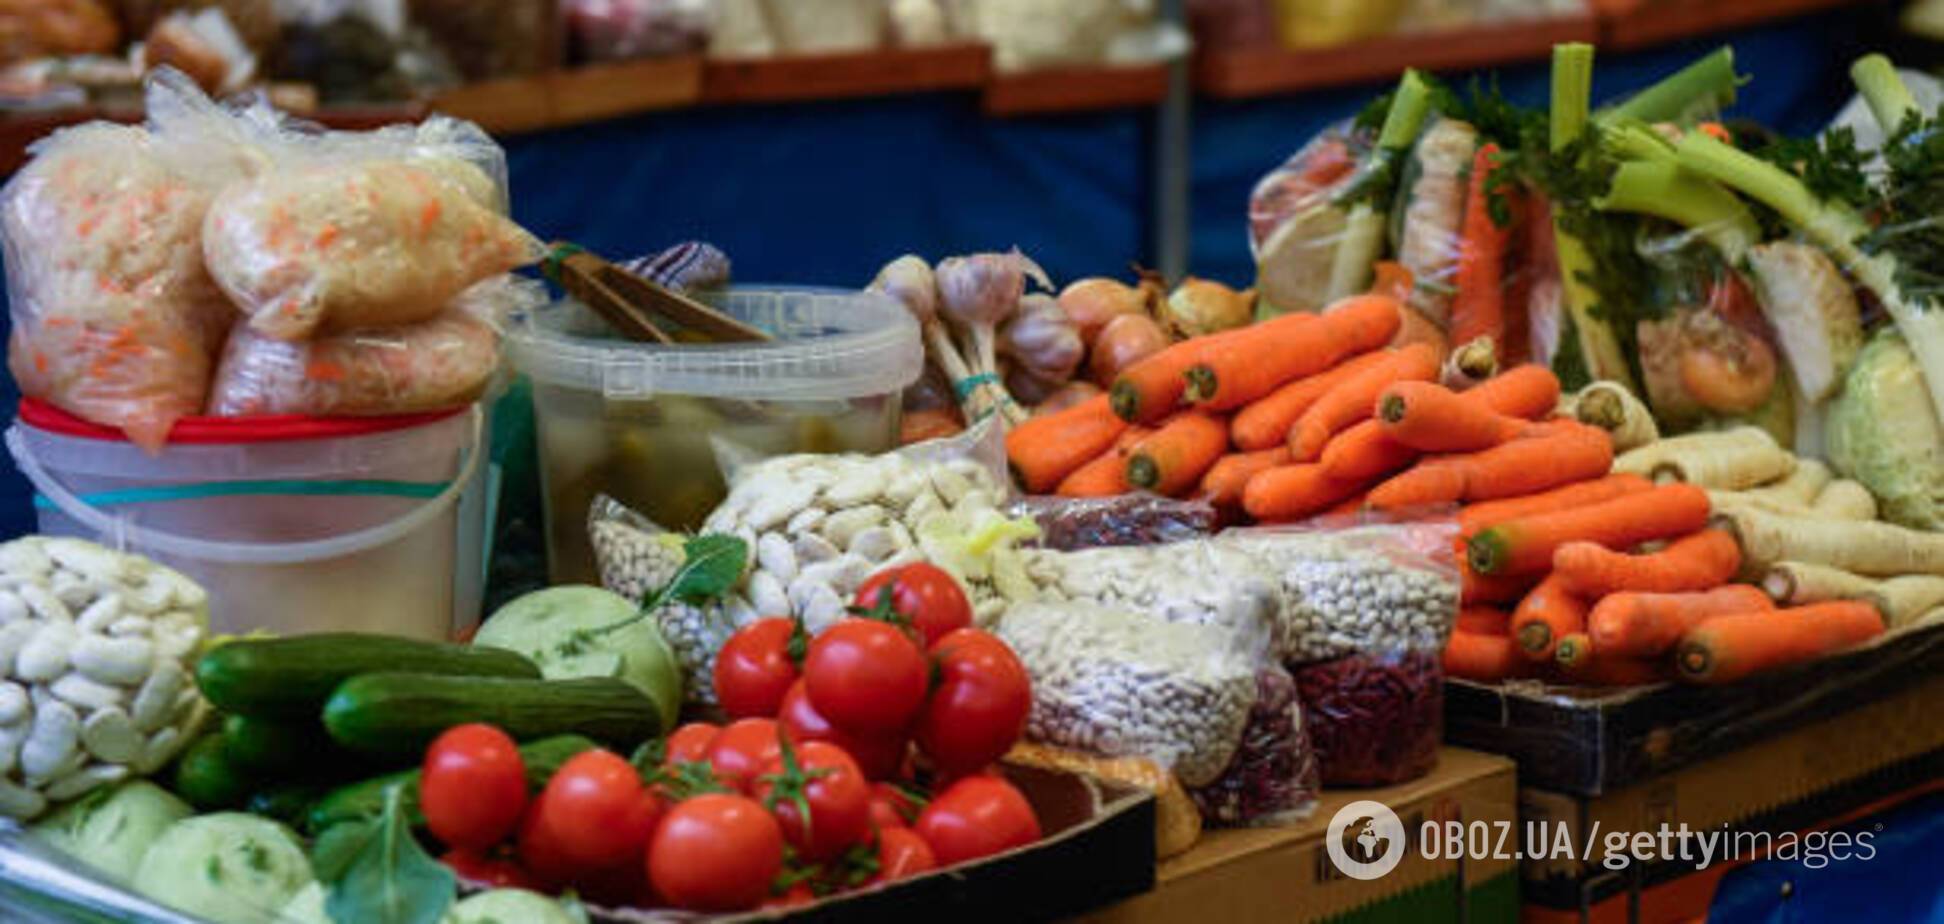 Опасно ли покупать импортные фрукты и овощи во время карантина